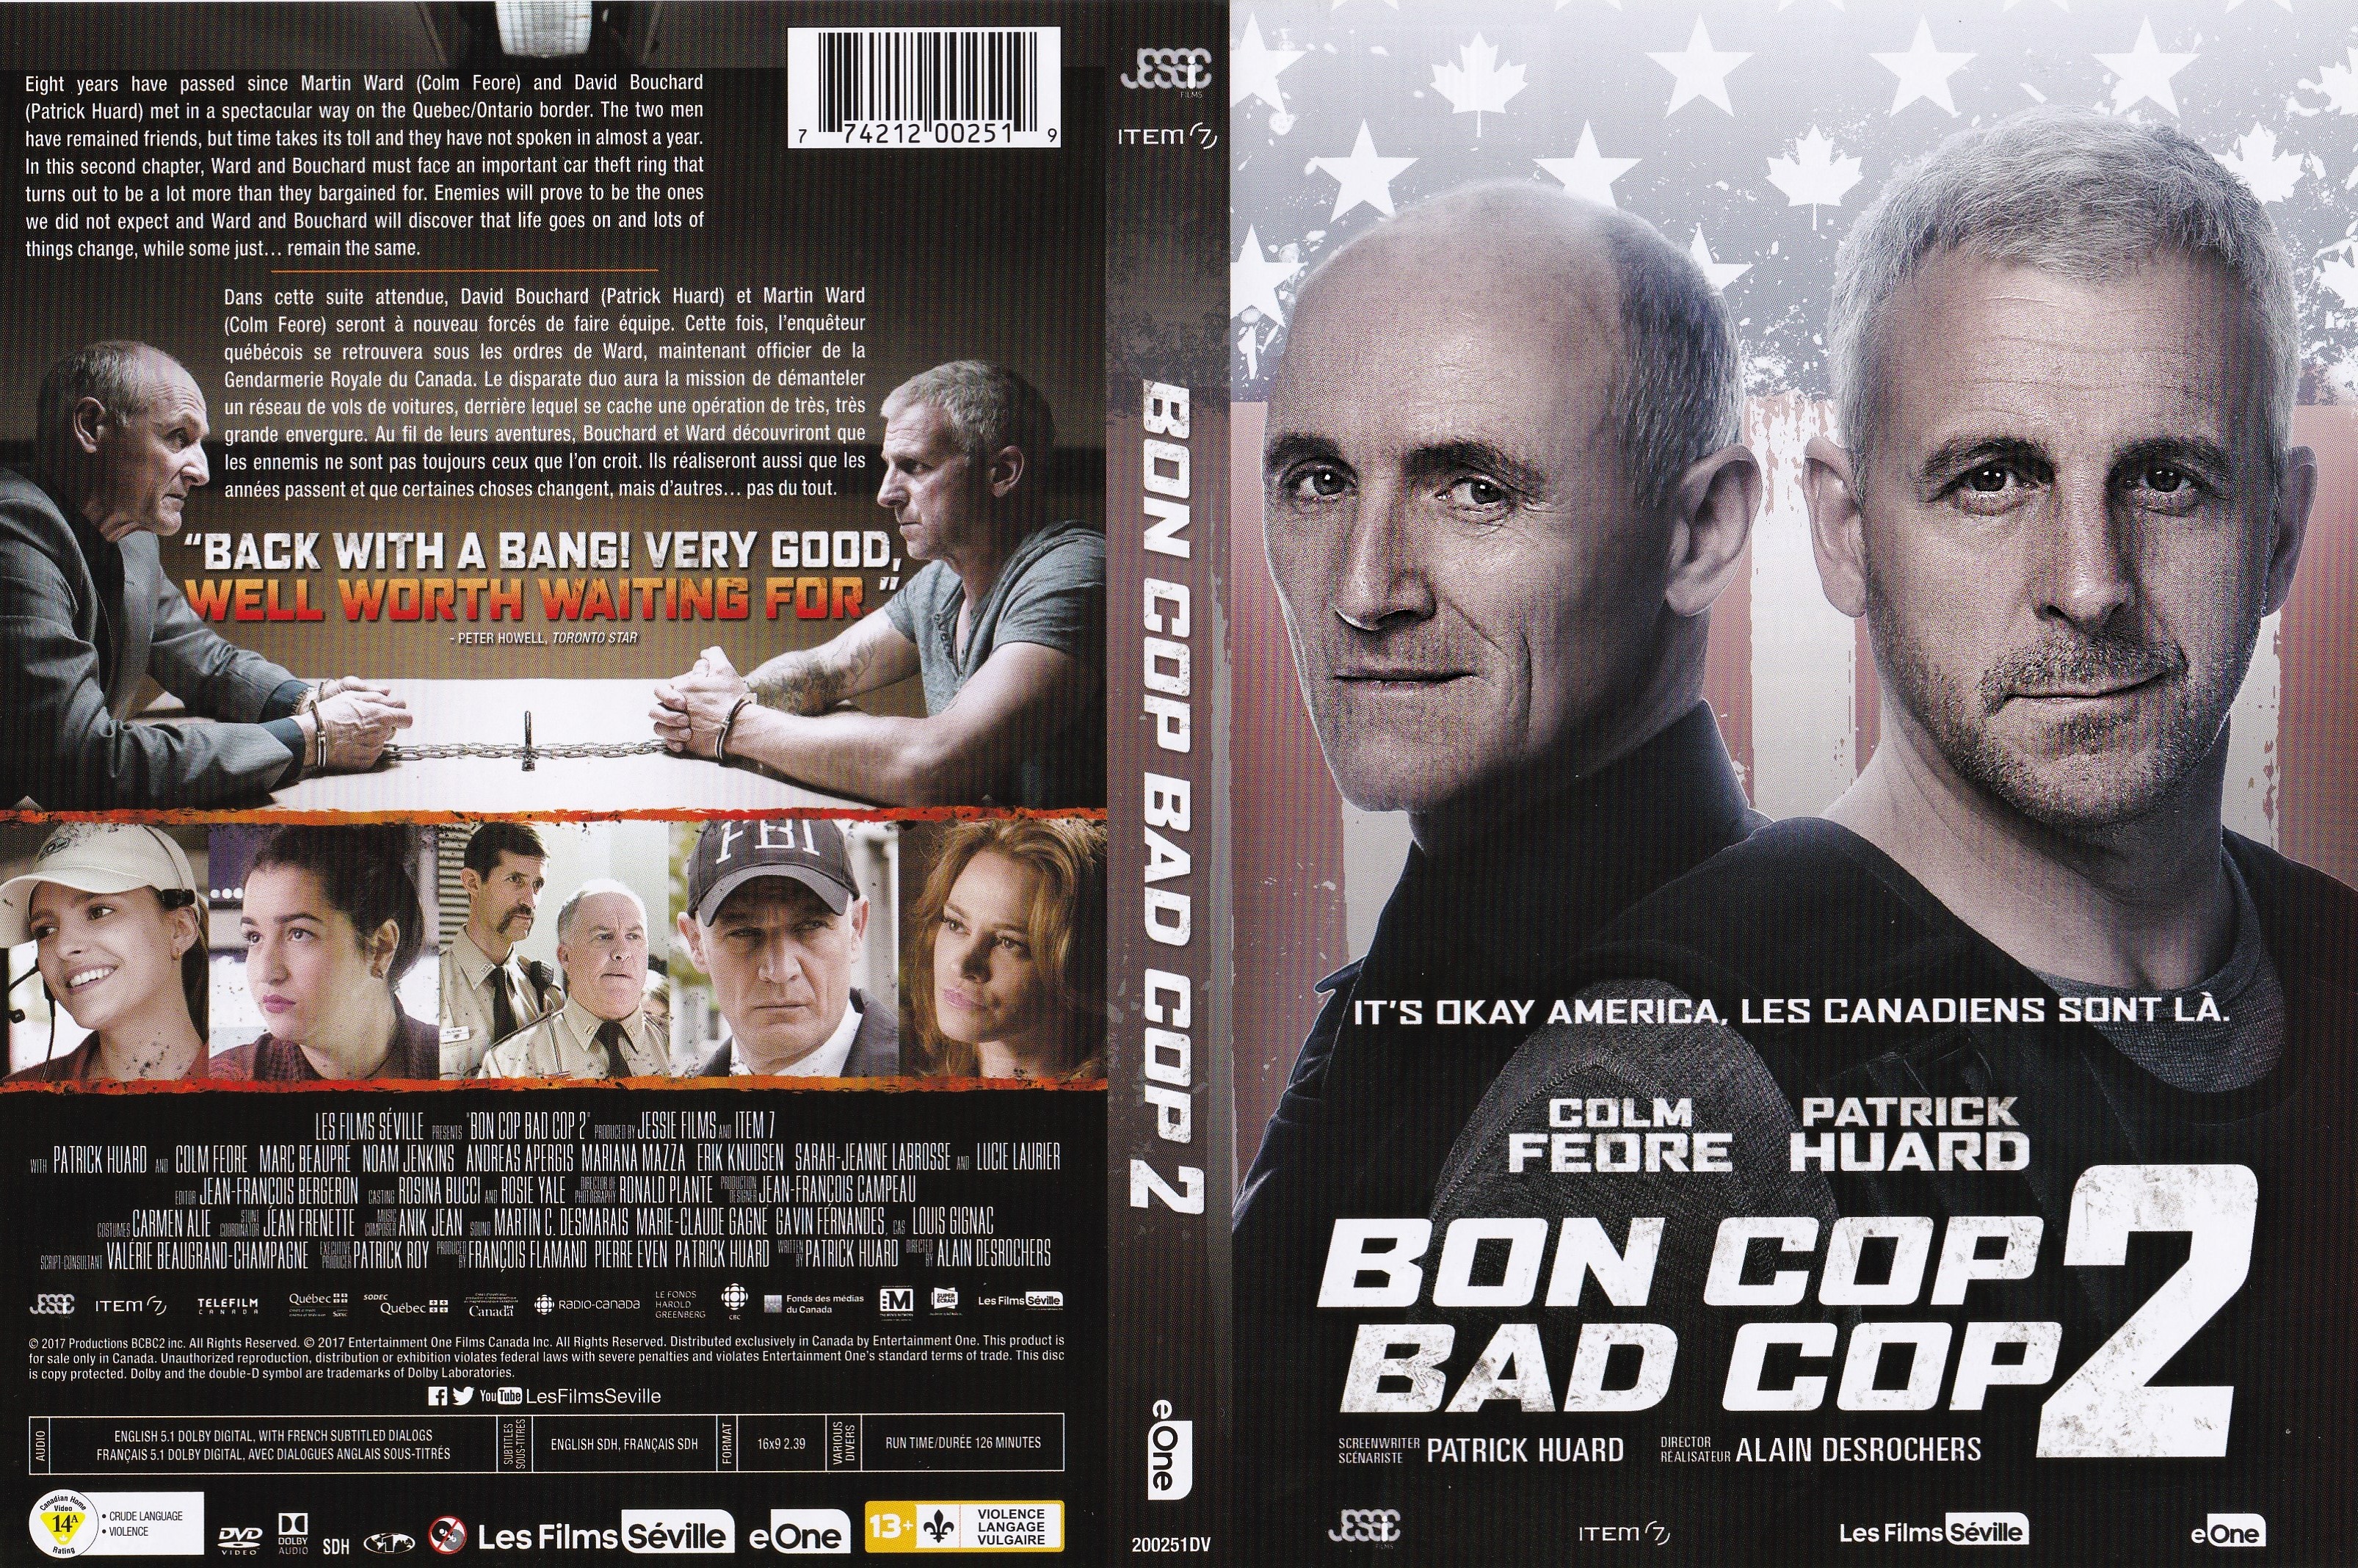 Jaquette DVD Bon cop bad cop 2 (Canadienne)